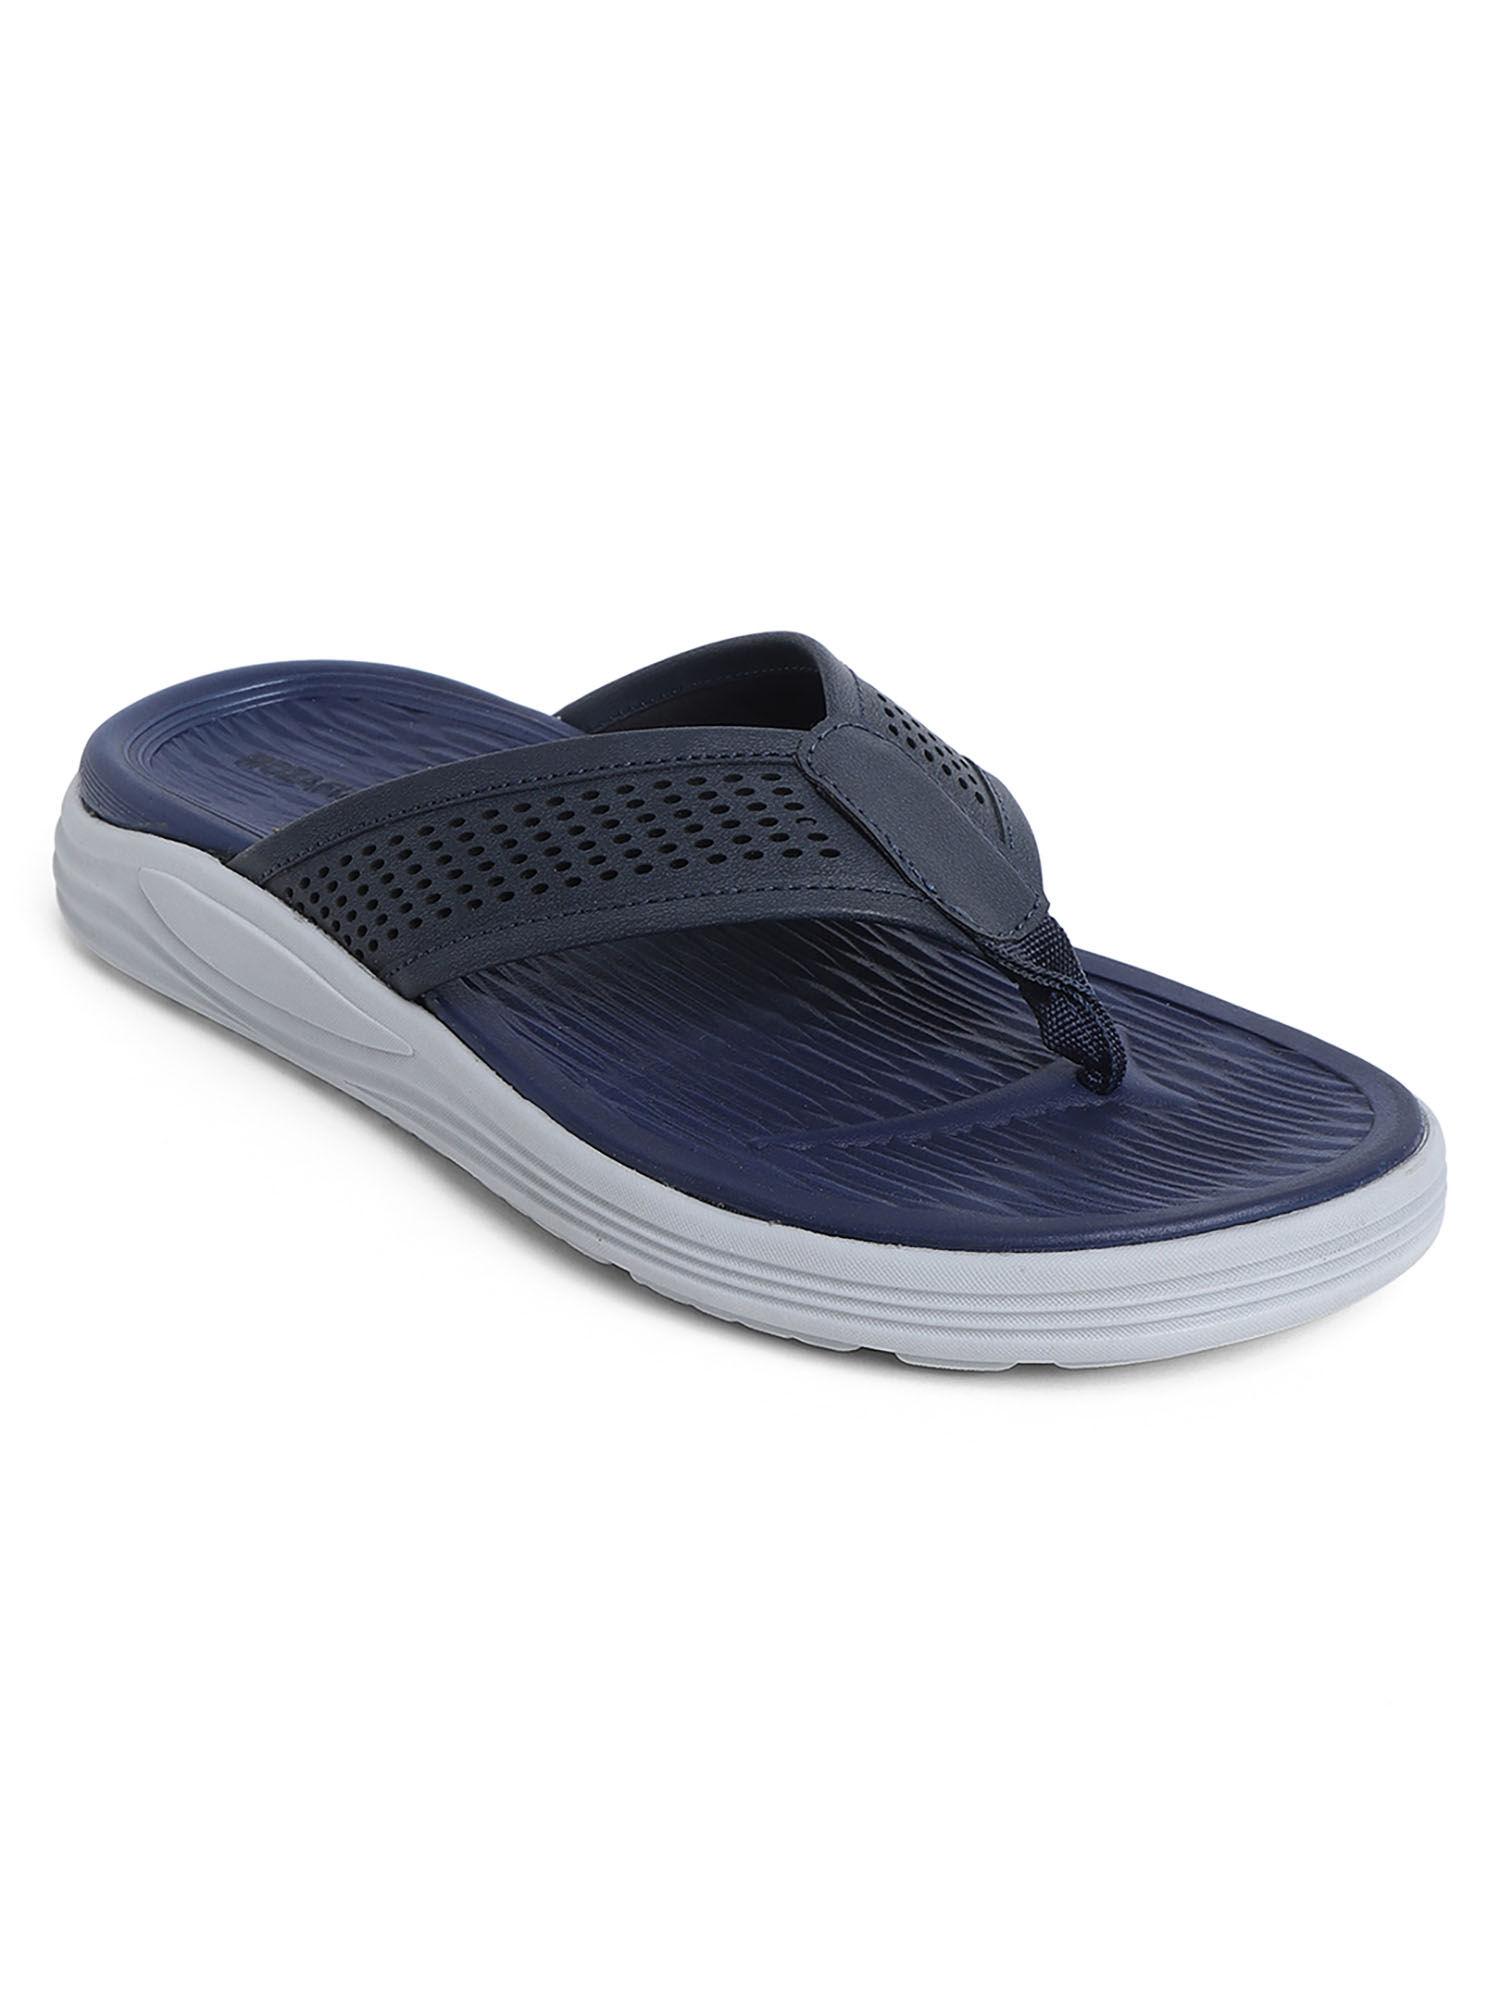 slippers for men-navy blue